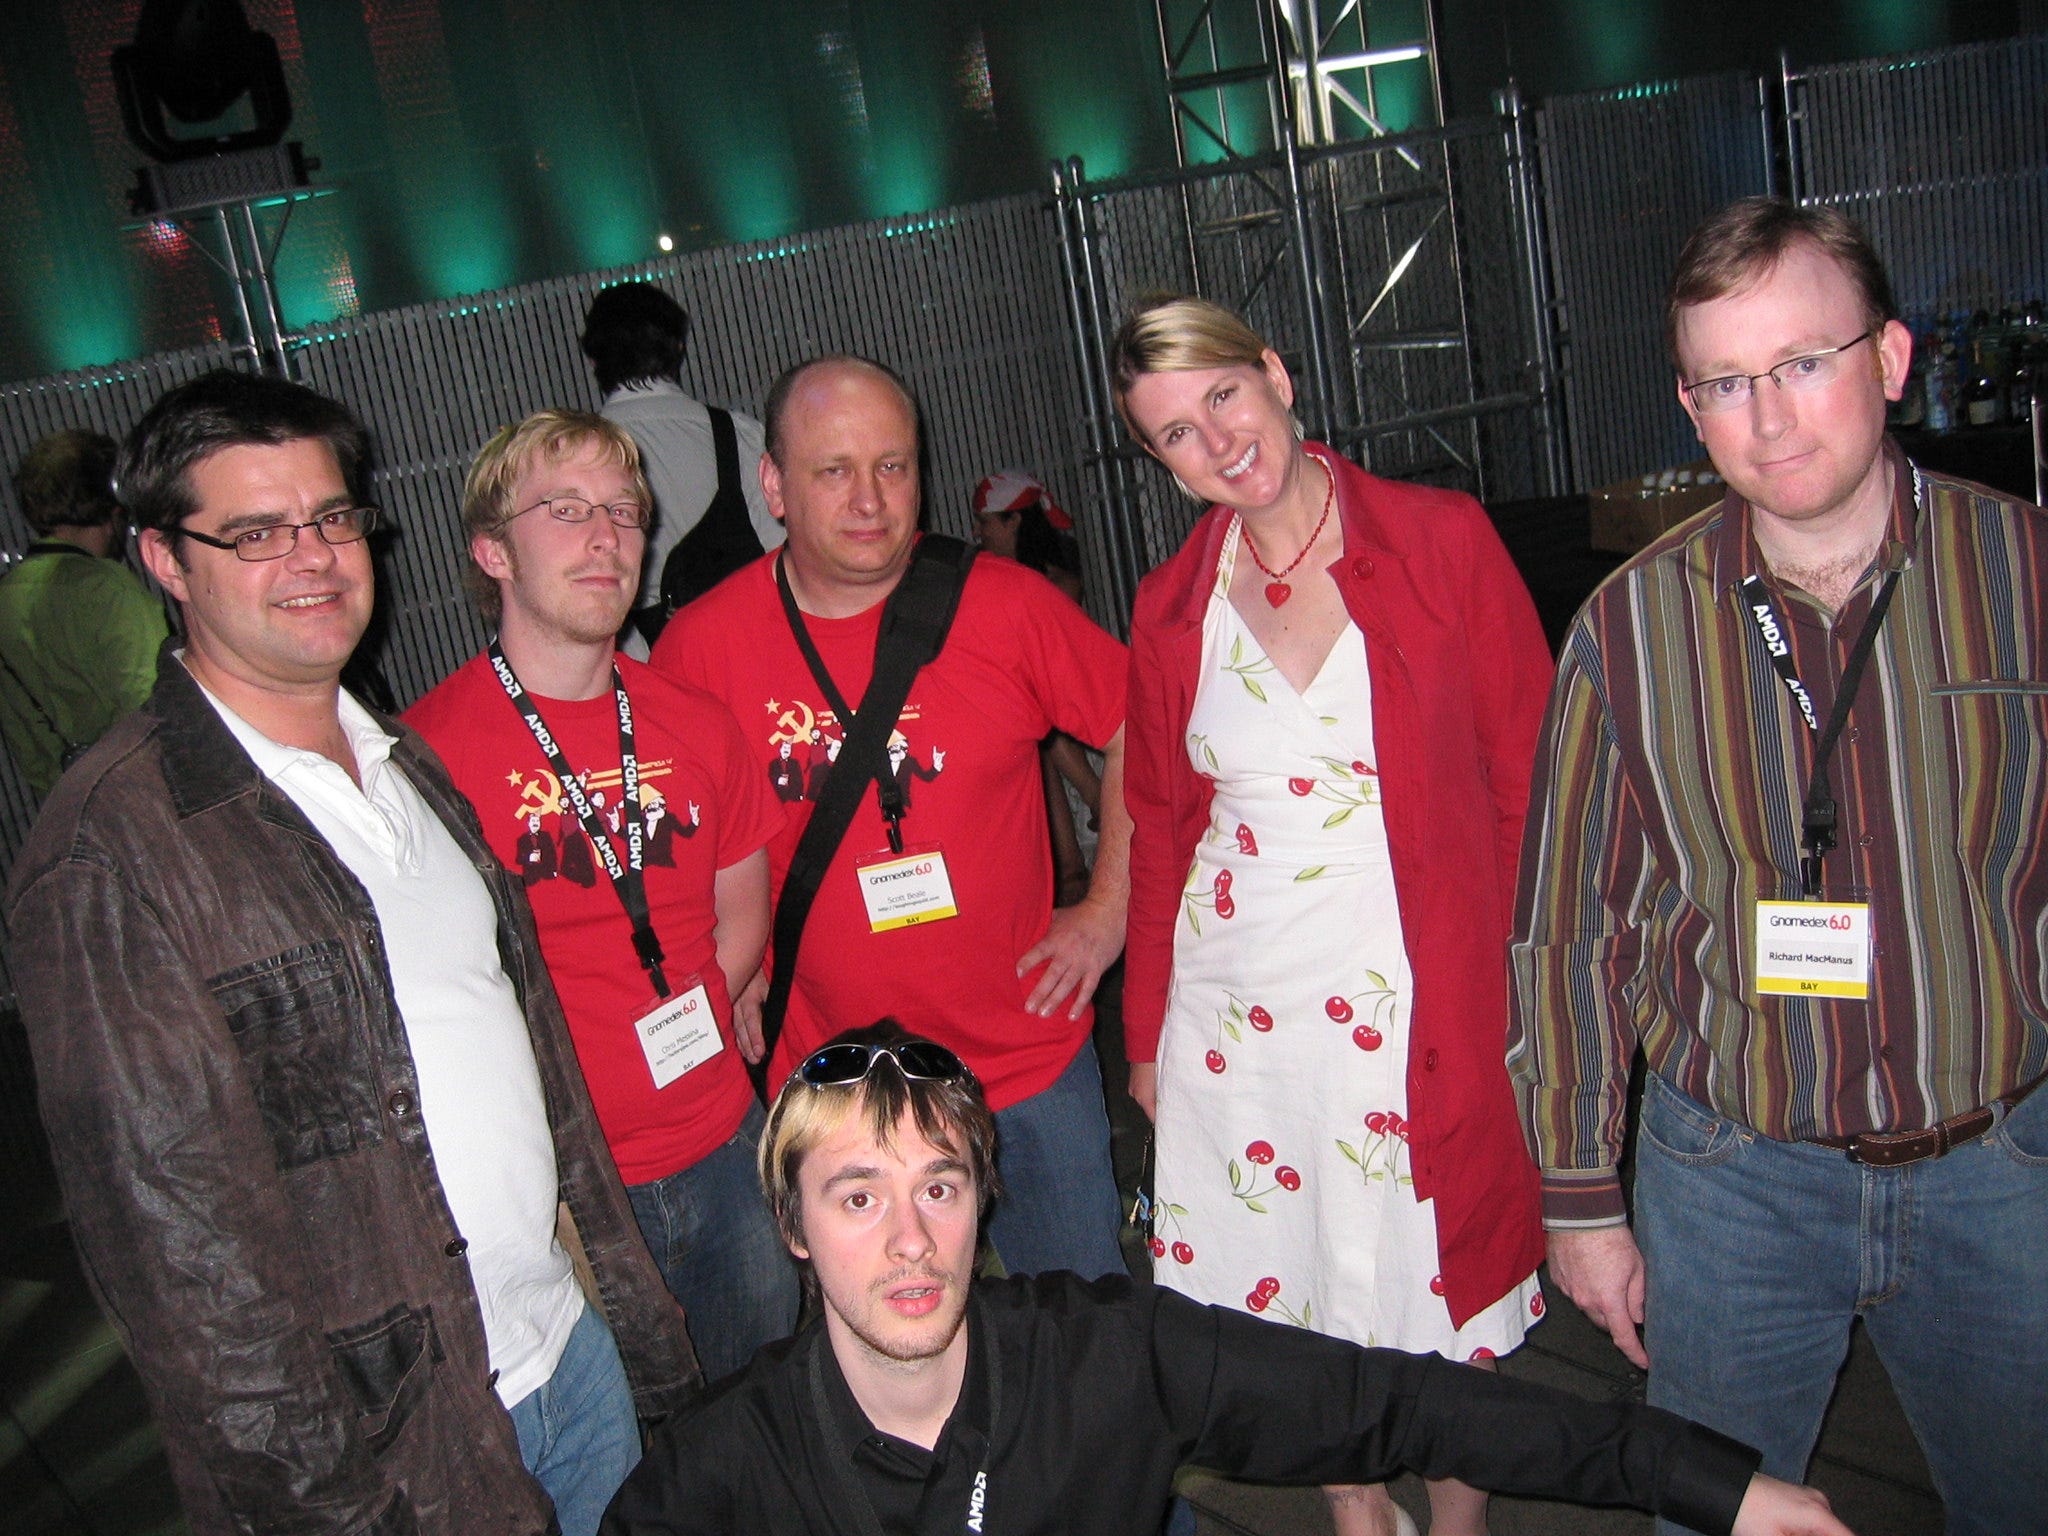 017. Gnomedex 2006 and My Corporate Blogging Adventure